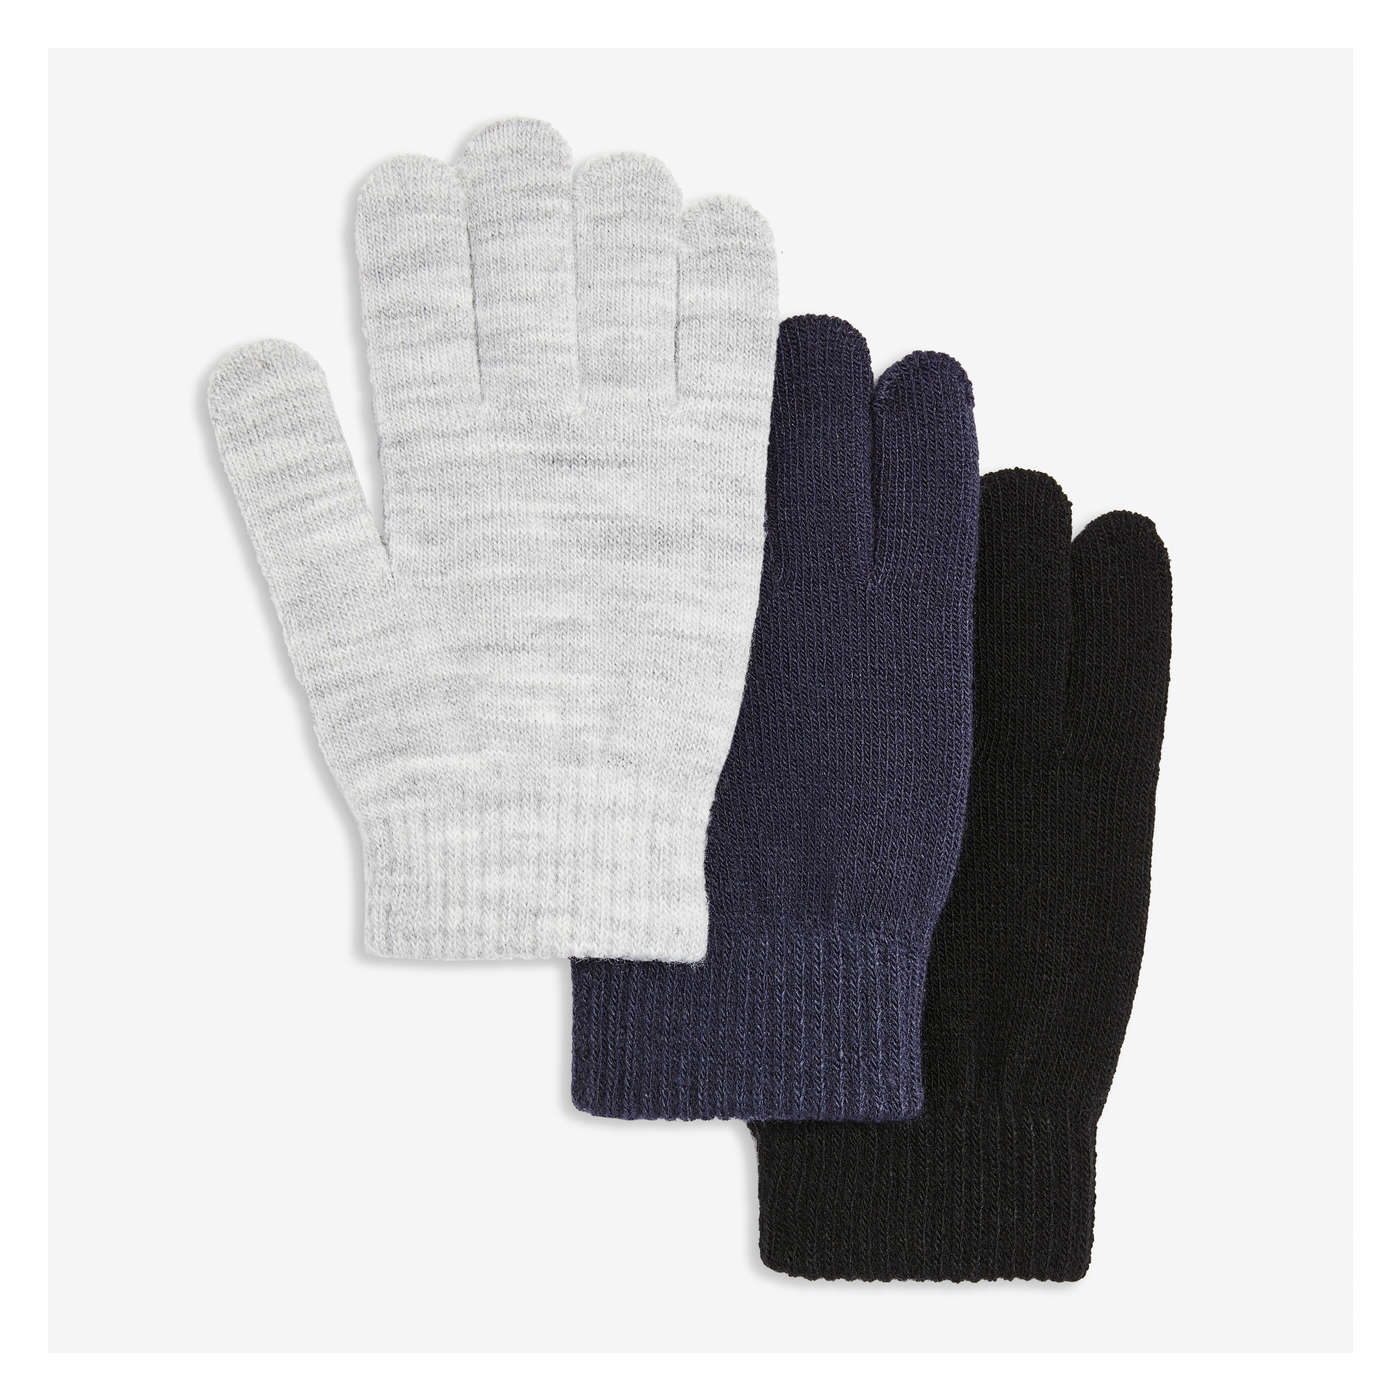 3 Pack Gloves